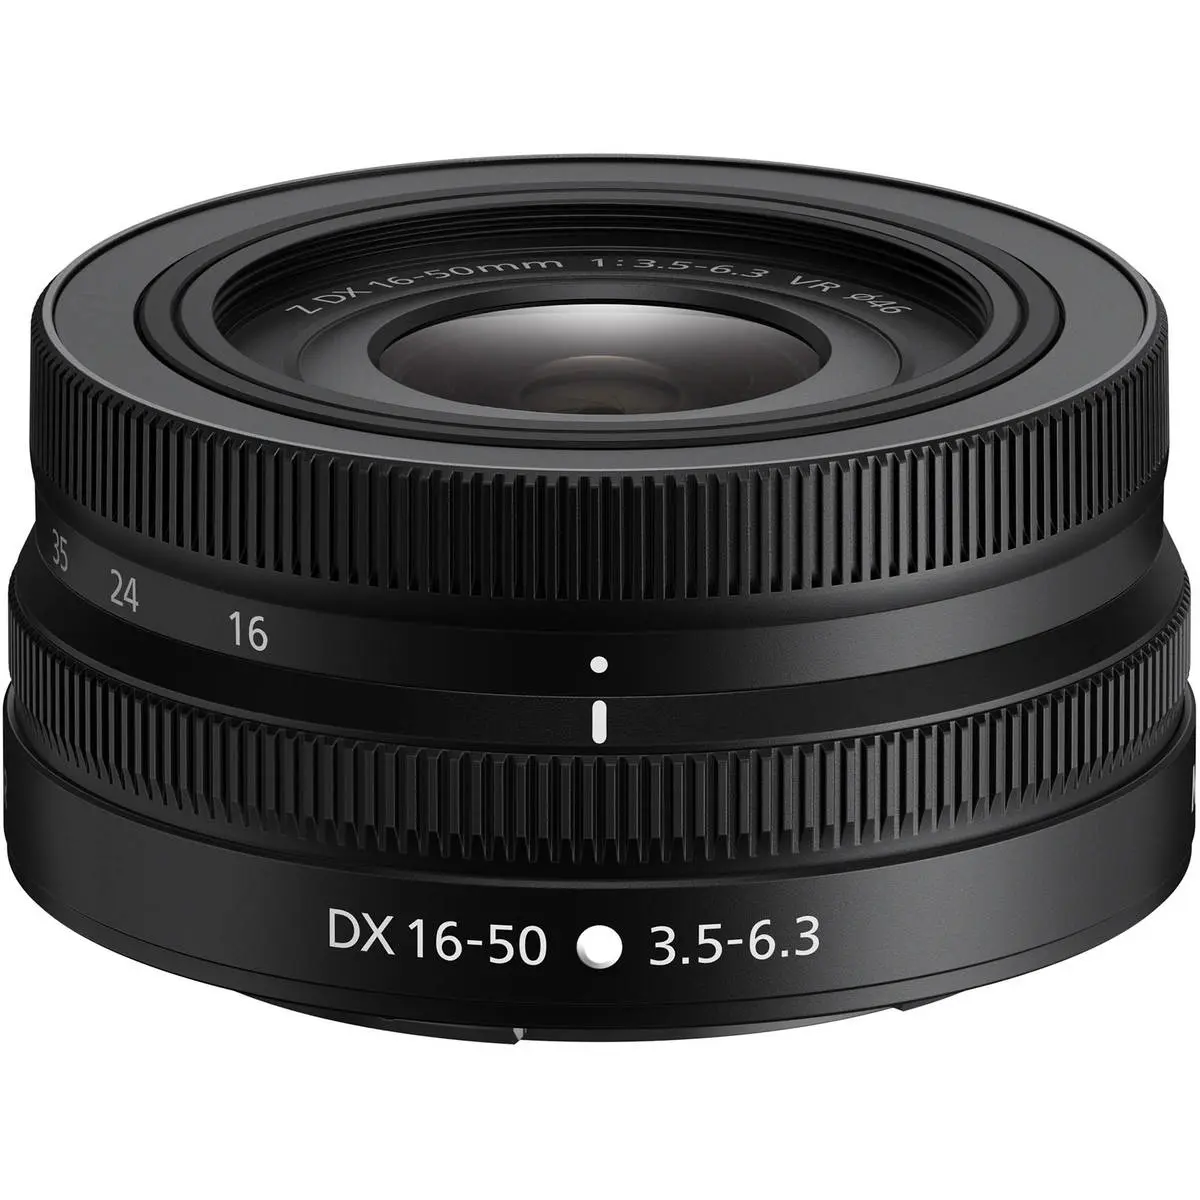 2. Nikon NIKKOR Z DX 16-50MM F/3.5-6.3 VR (kit lens)